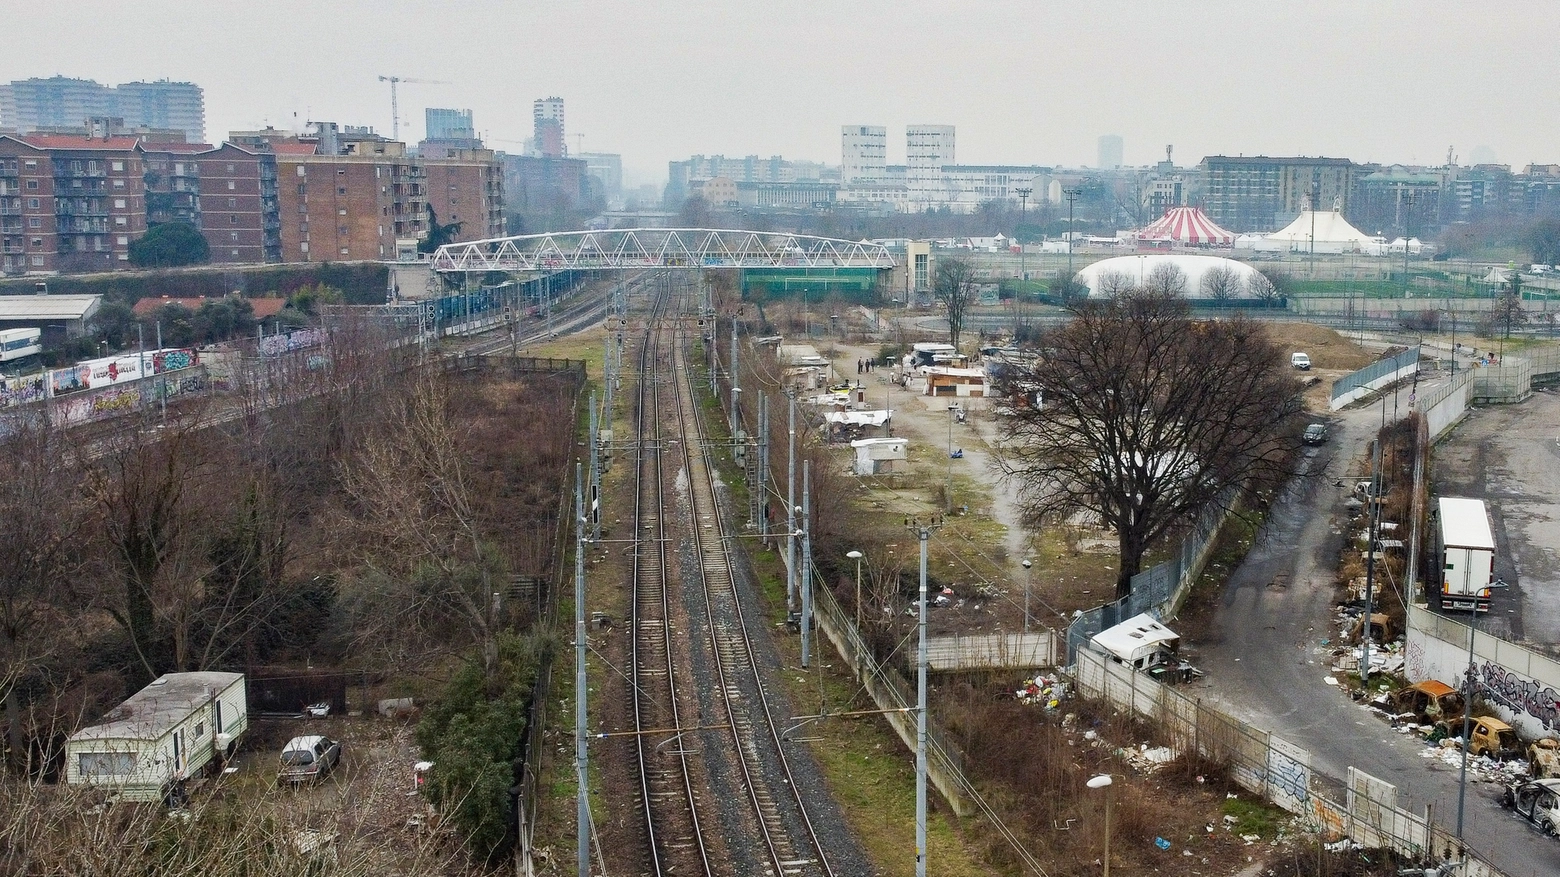 La baraccopoli di via Bonfadini vista dalla ferrovia (Foto dal drone di Andrea Fasani)